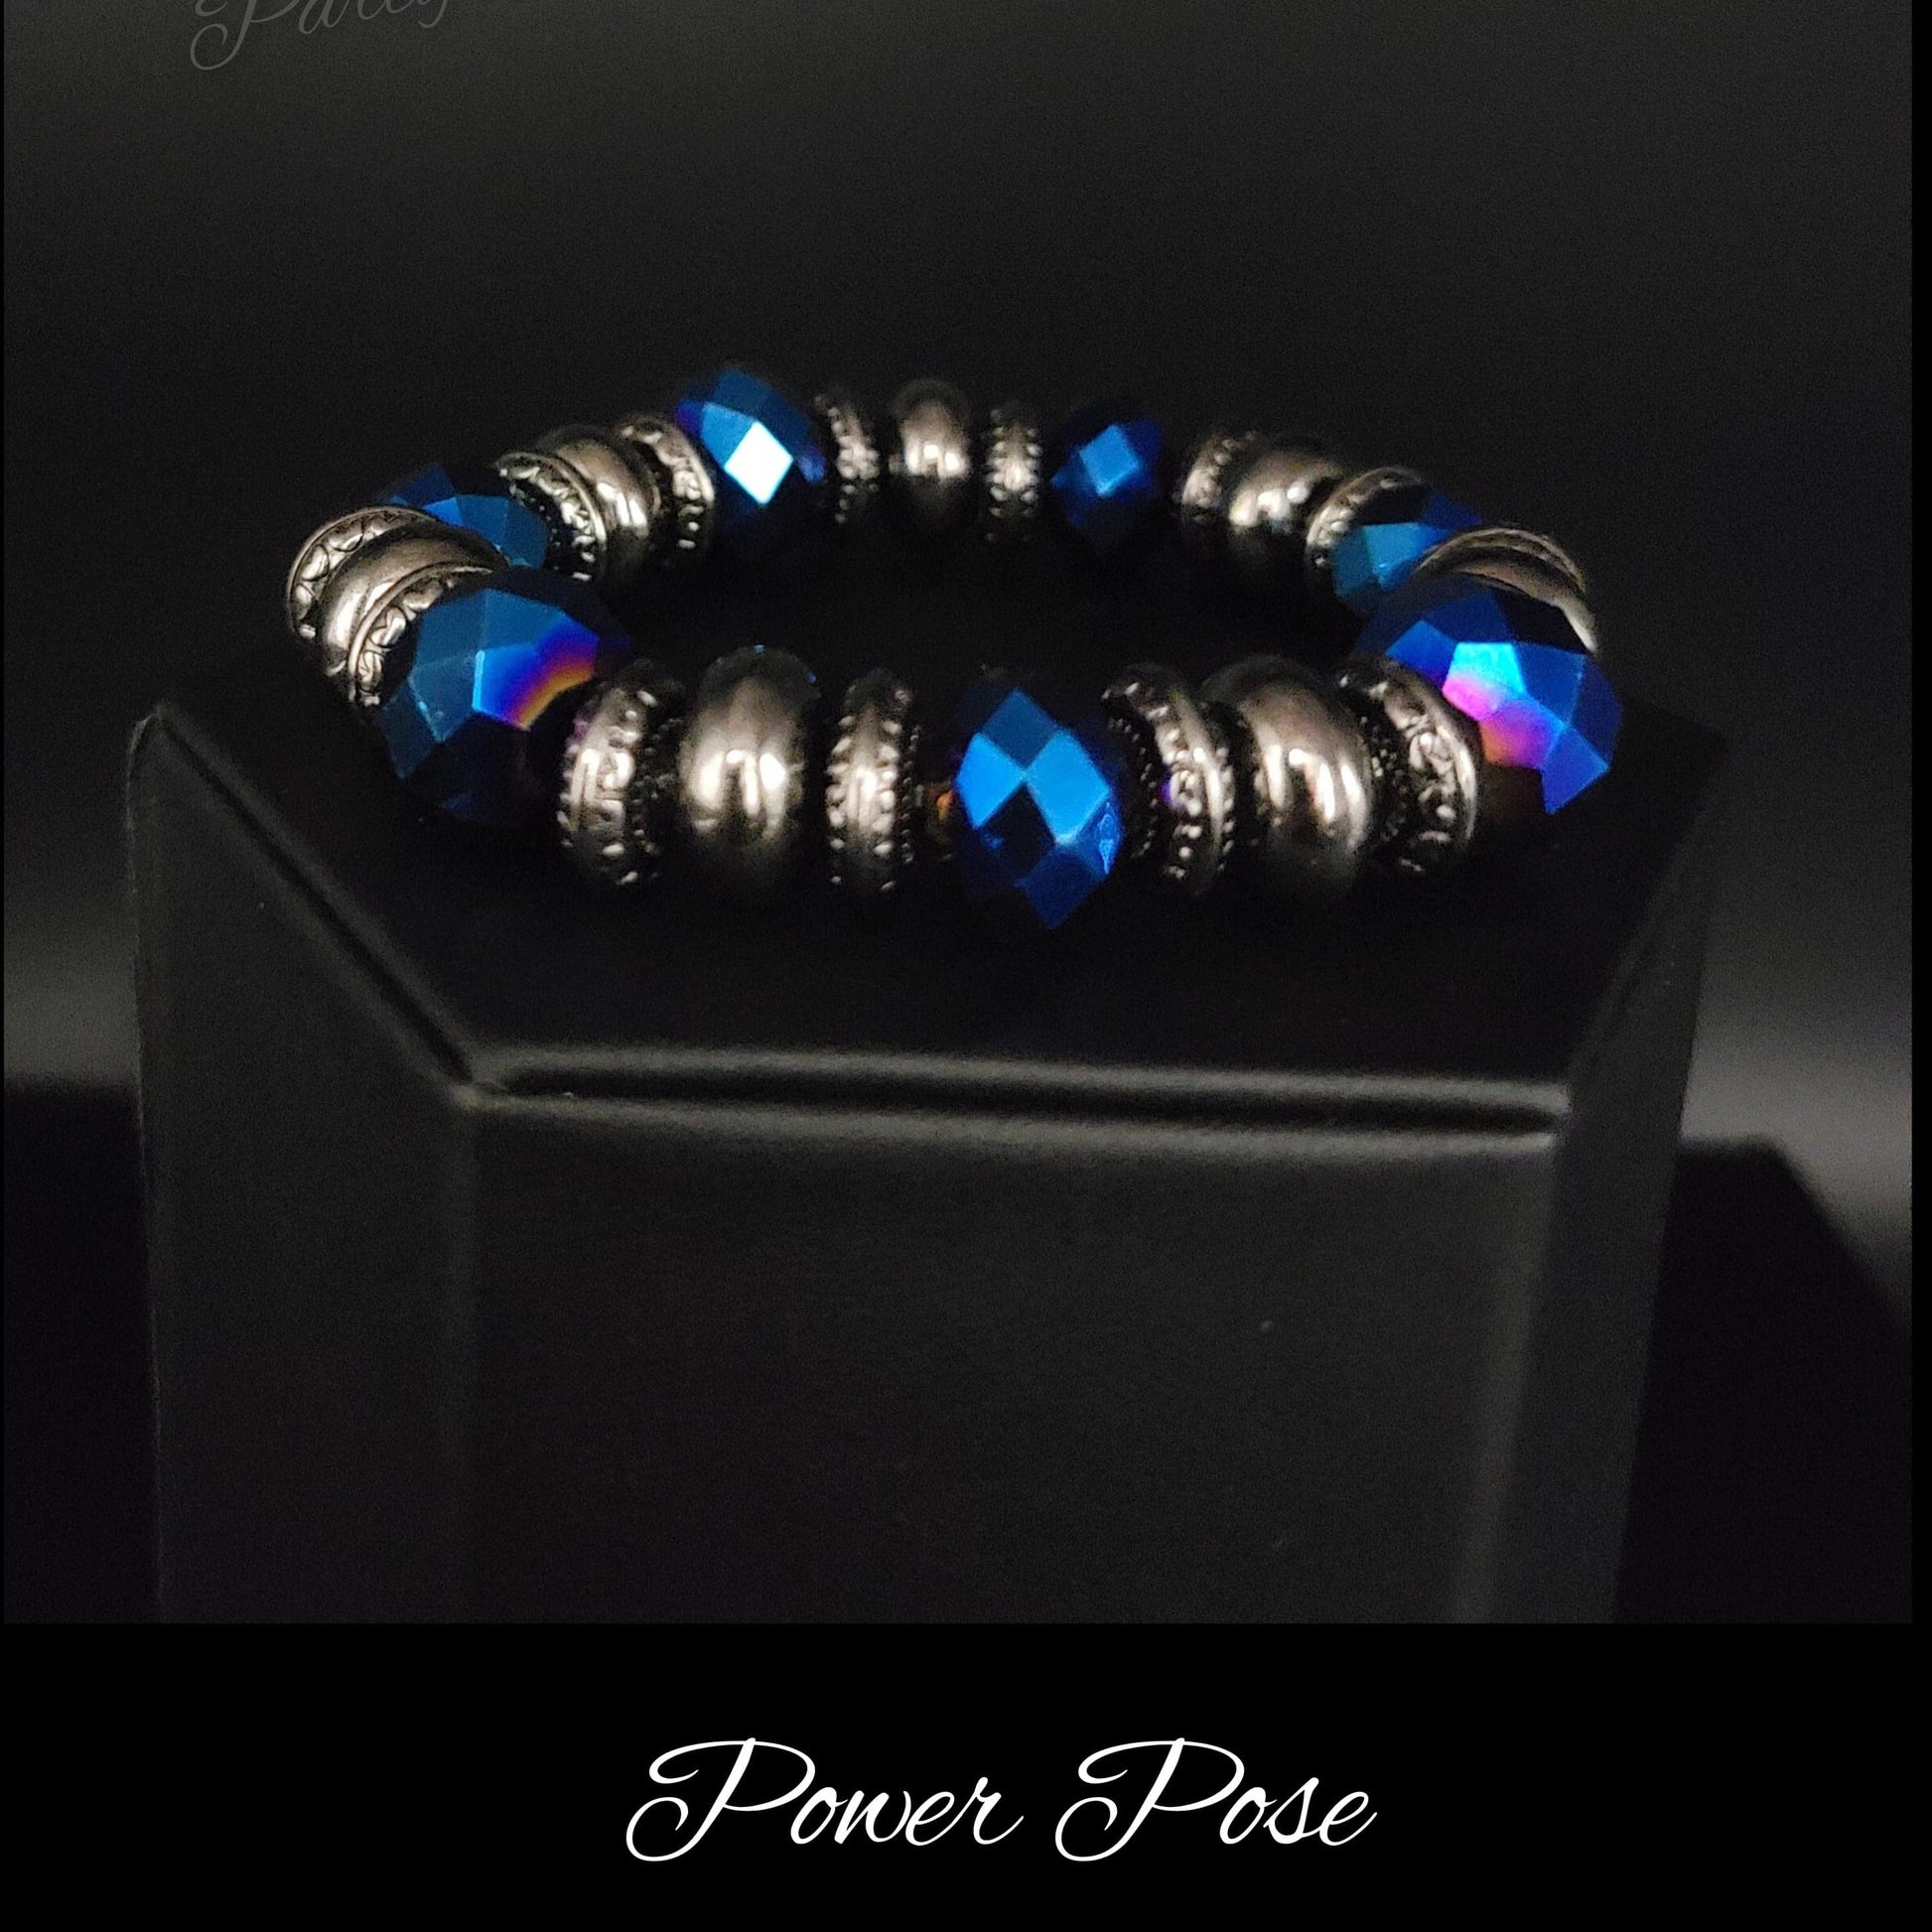 Power Pose Blue Bracelet - May 2022 LOTP - rainbowartsreview by Danielle Baker